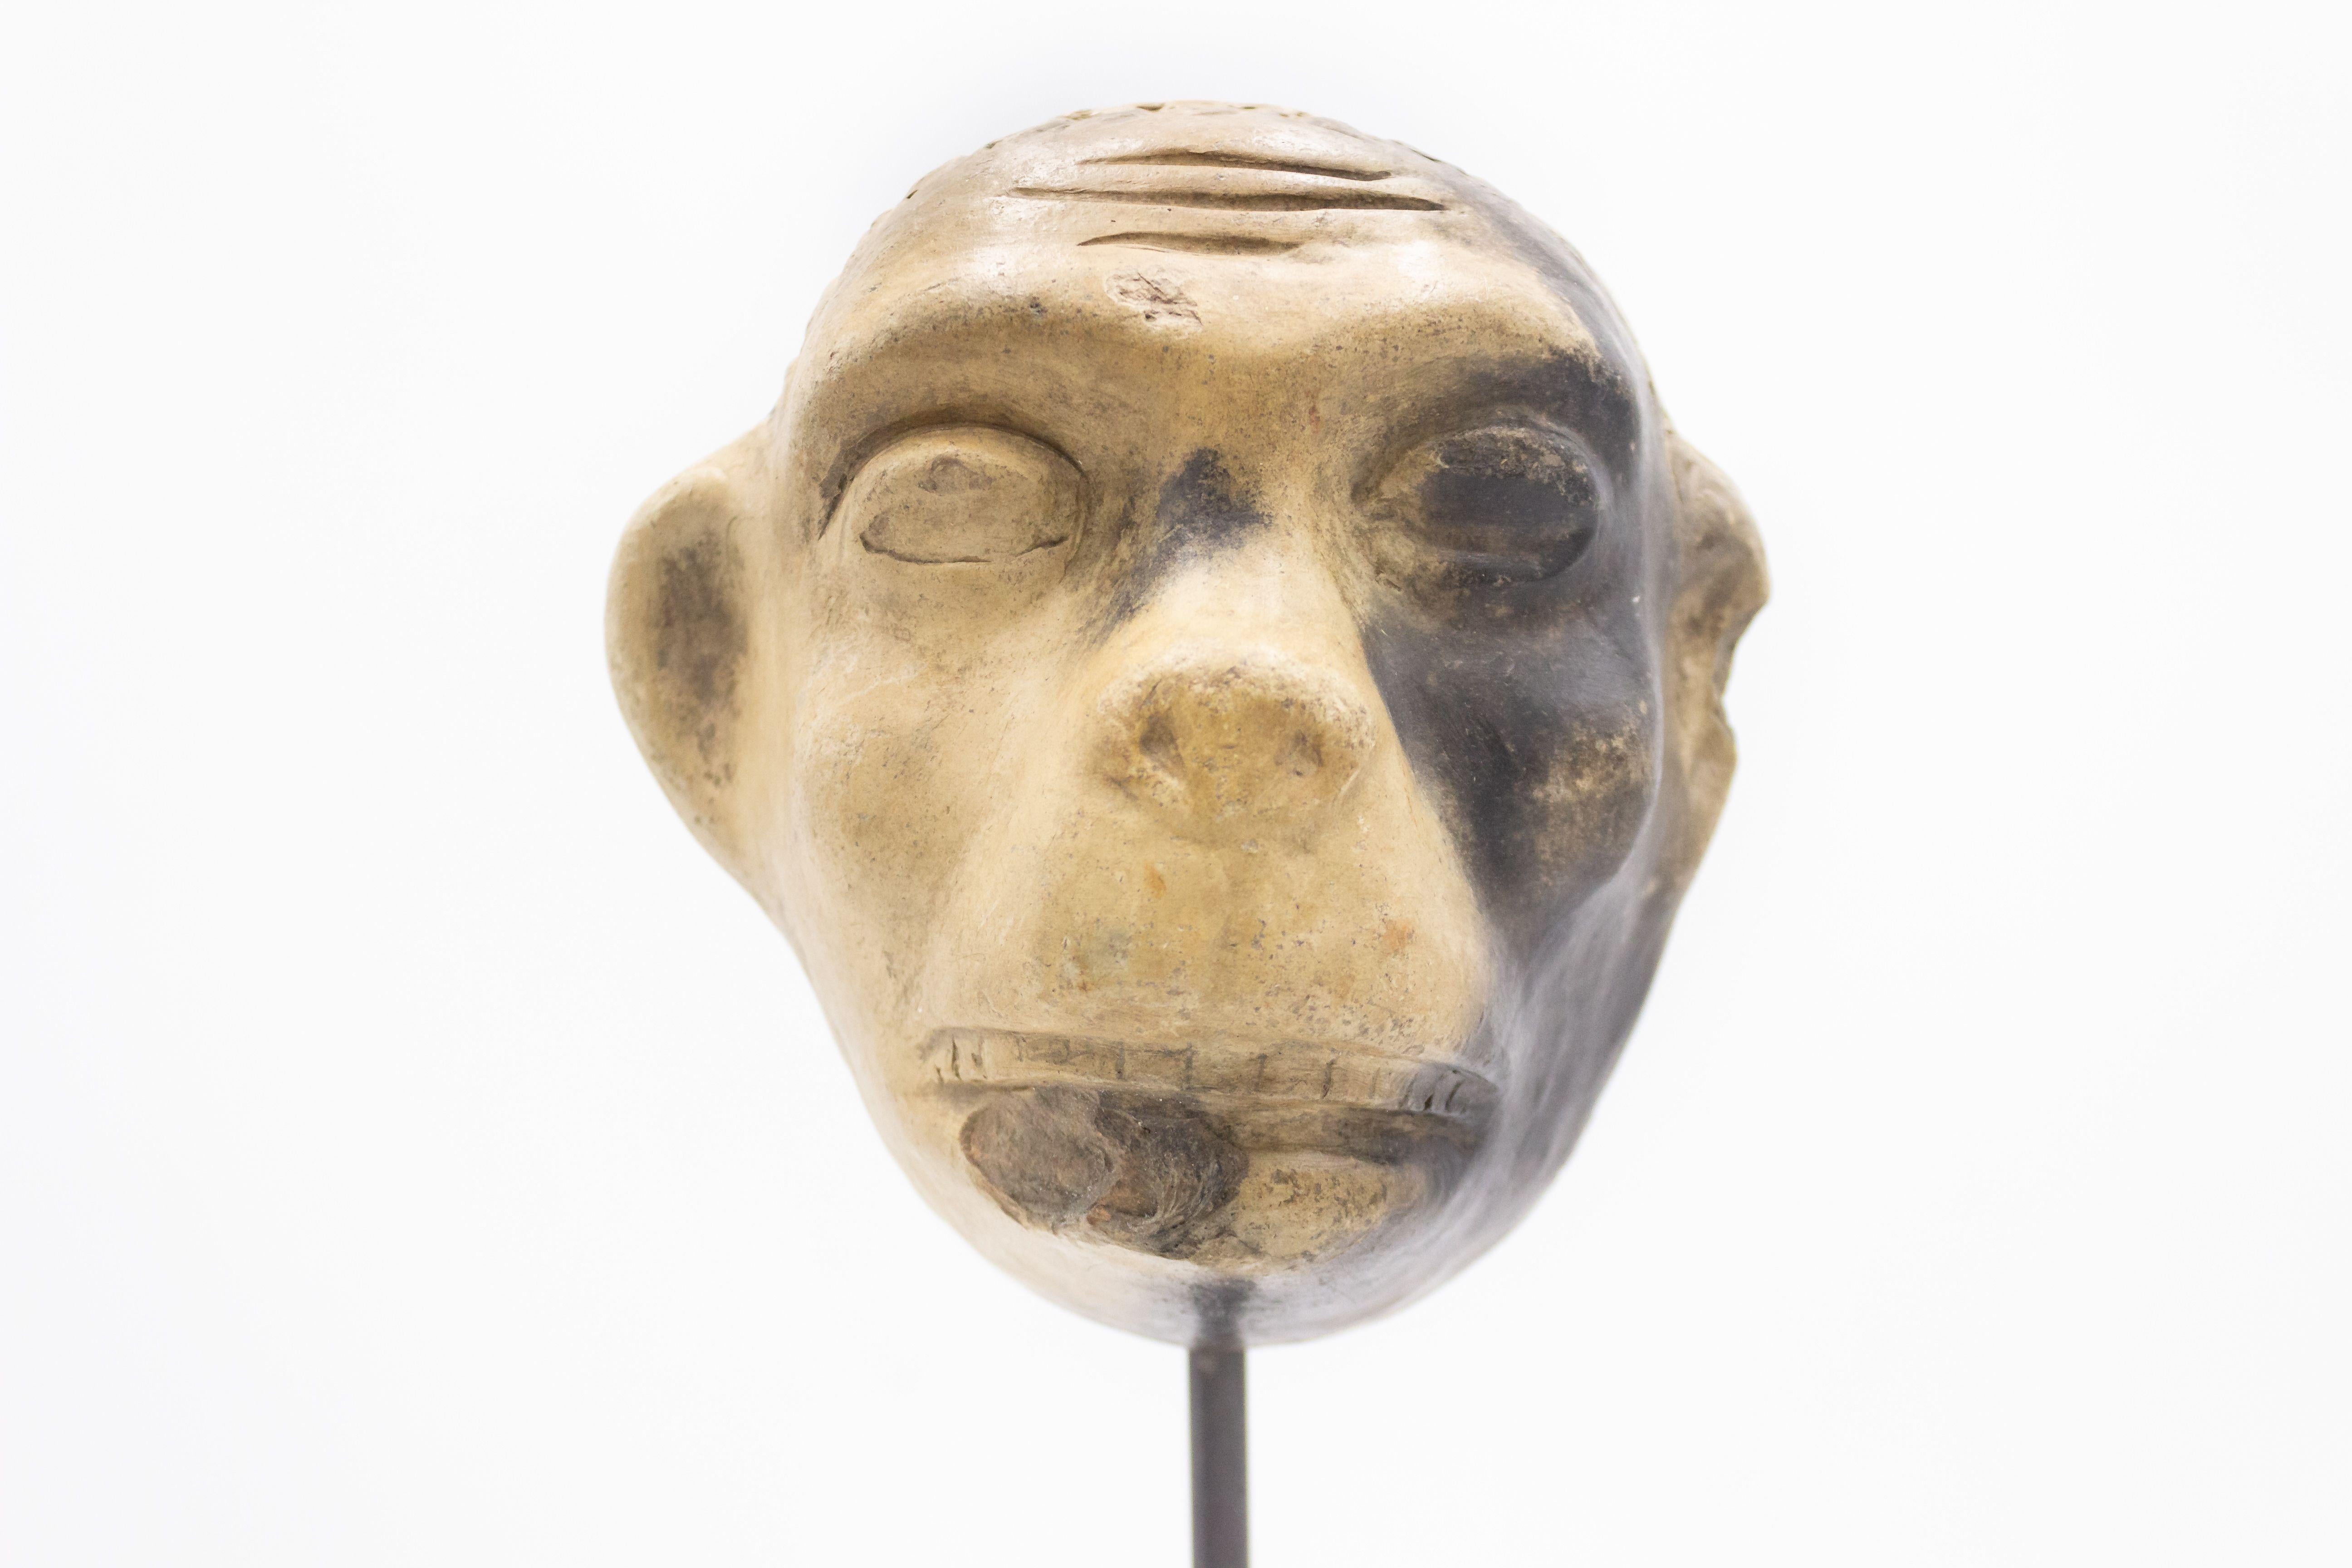 Kontinentaldeutsche (spätes 19. Jh.) Terrakotta-Maskenform eines Affengesichts, ausgestellt auf einem quadratischen schwarzen Marmorsockel (Teil einer Sammlung).
 